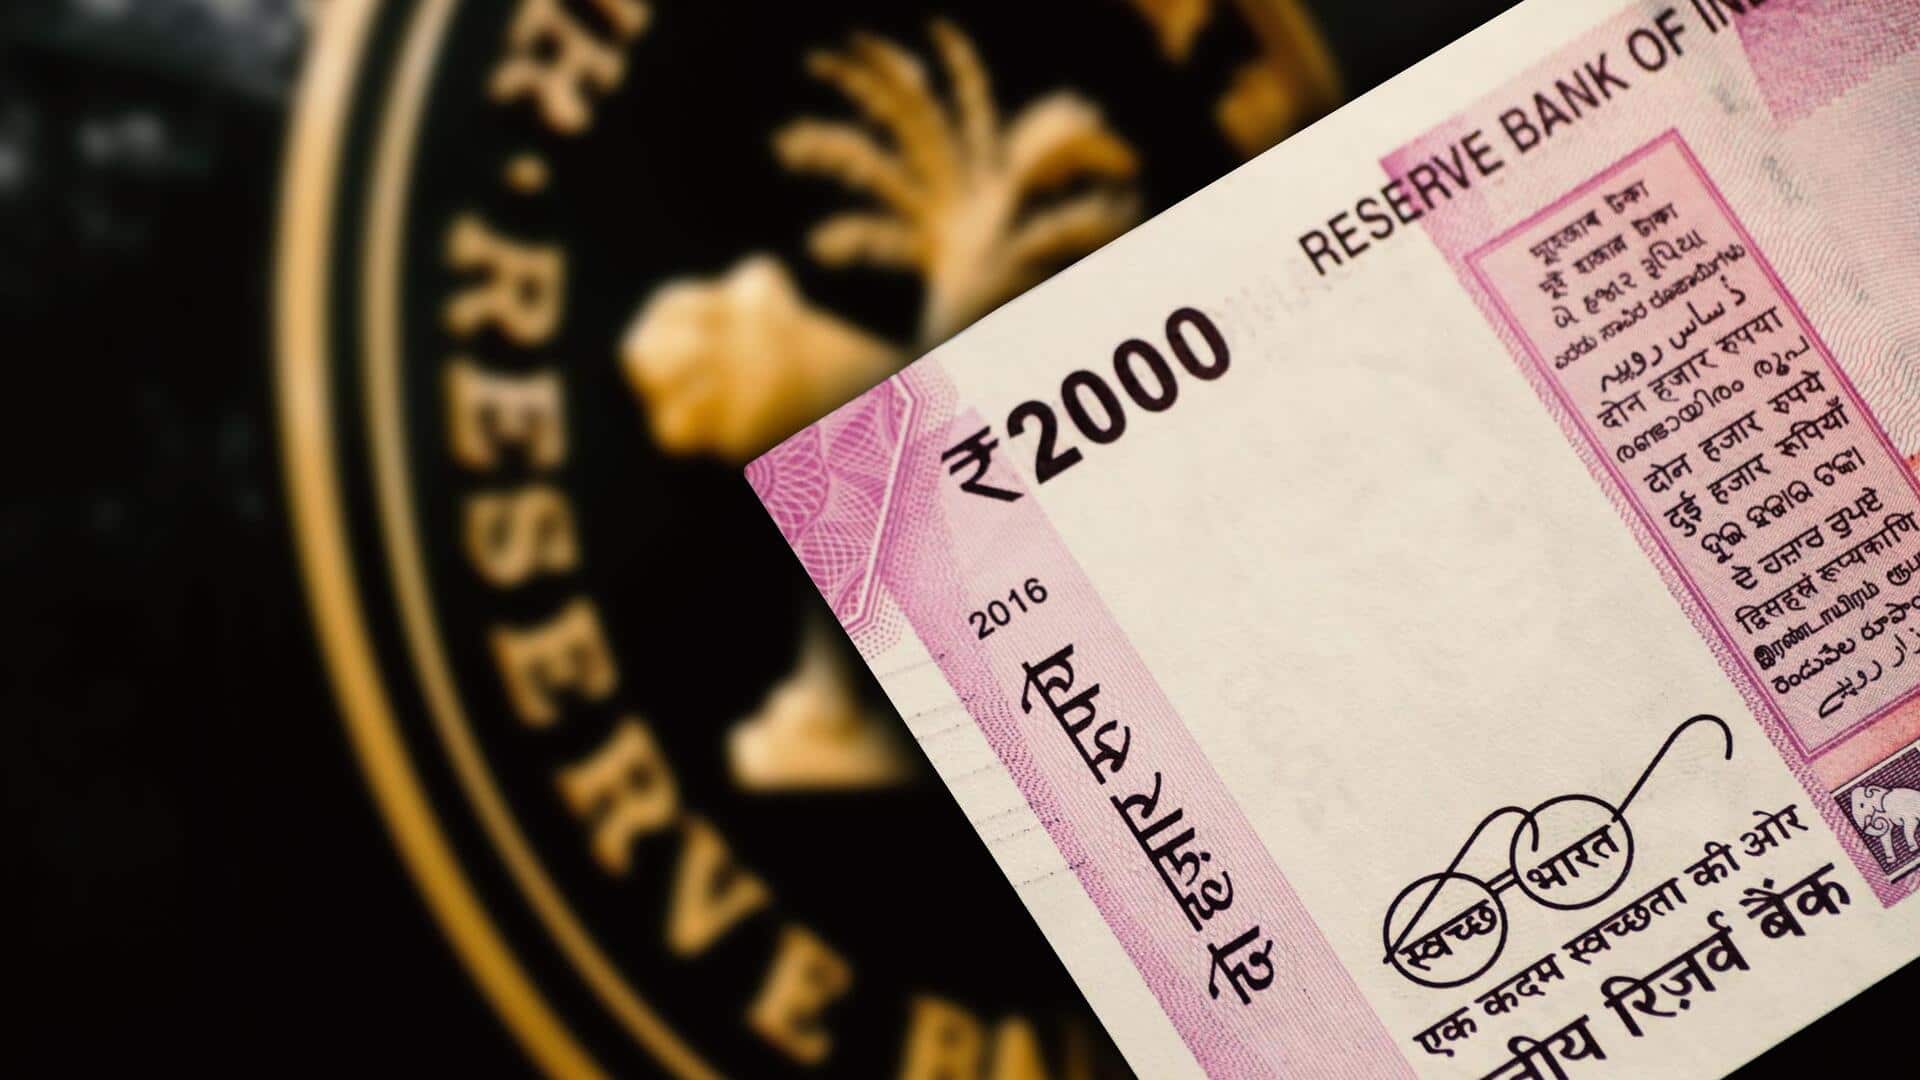 अभी तक बैंकों में वापस नहीं लौटे लगभग 10,000 करोड़ रुपये के 2,000 रुपये के नोट